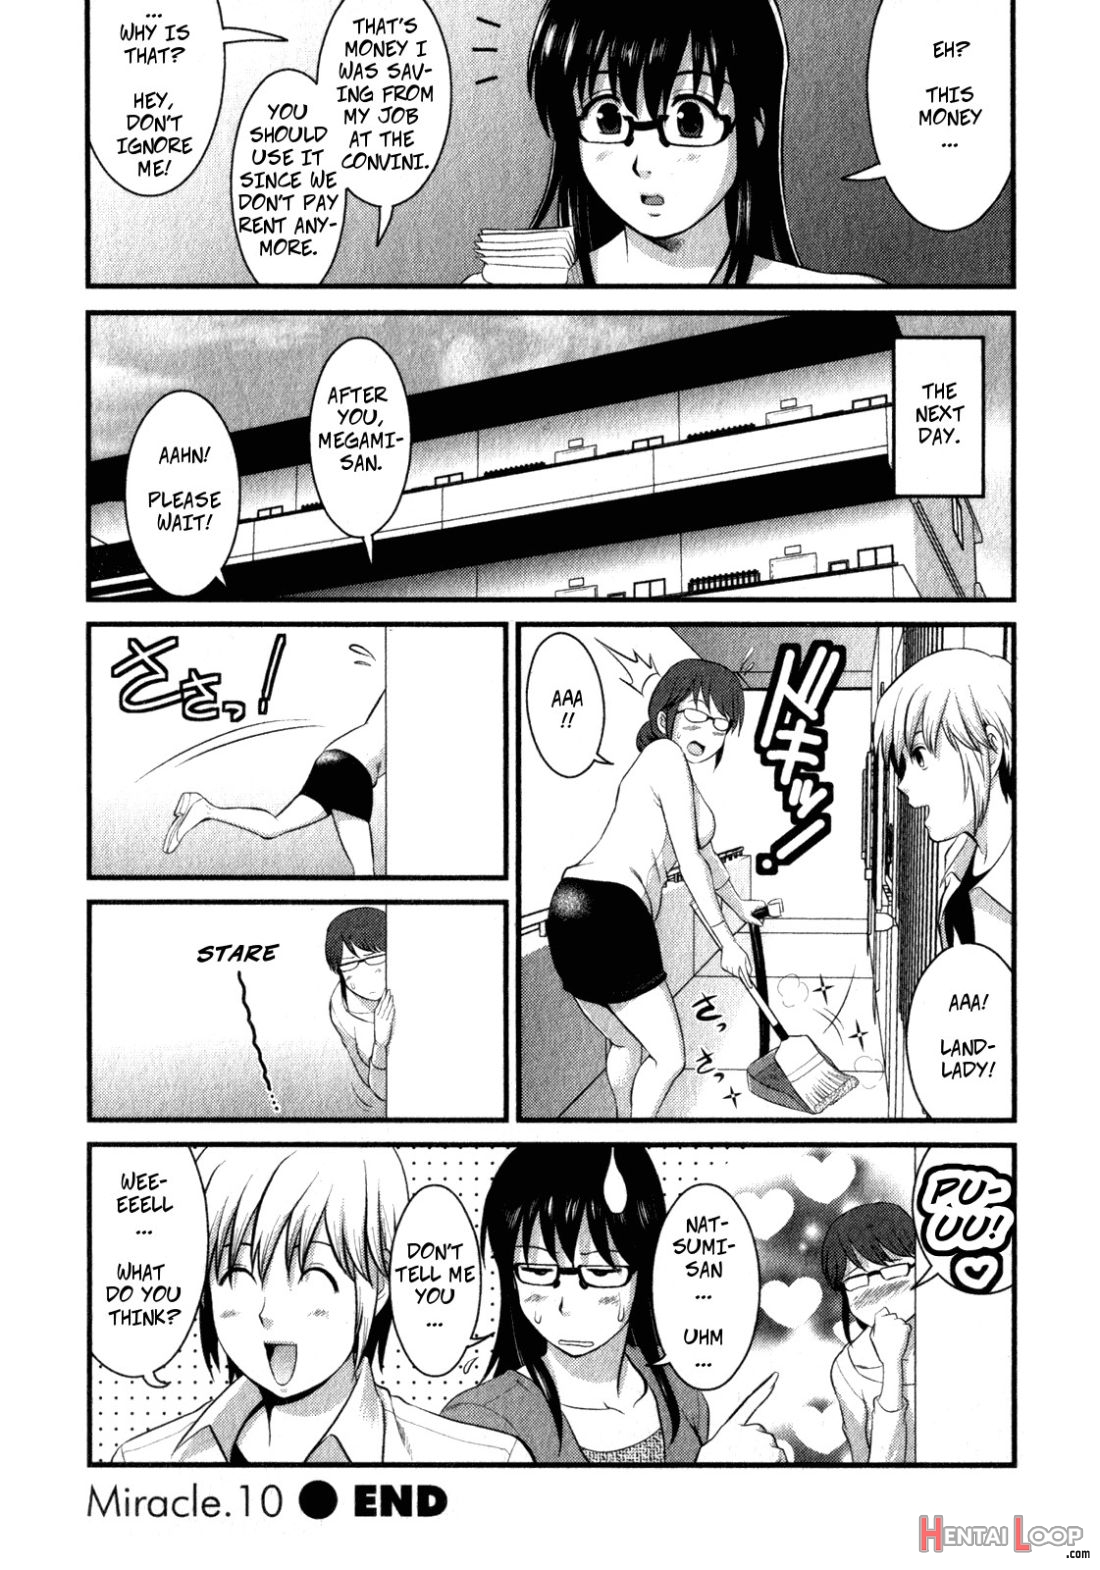 Shizuko-san's Story page 5